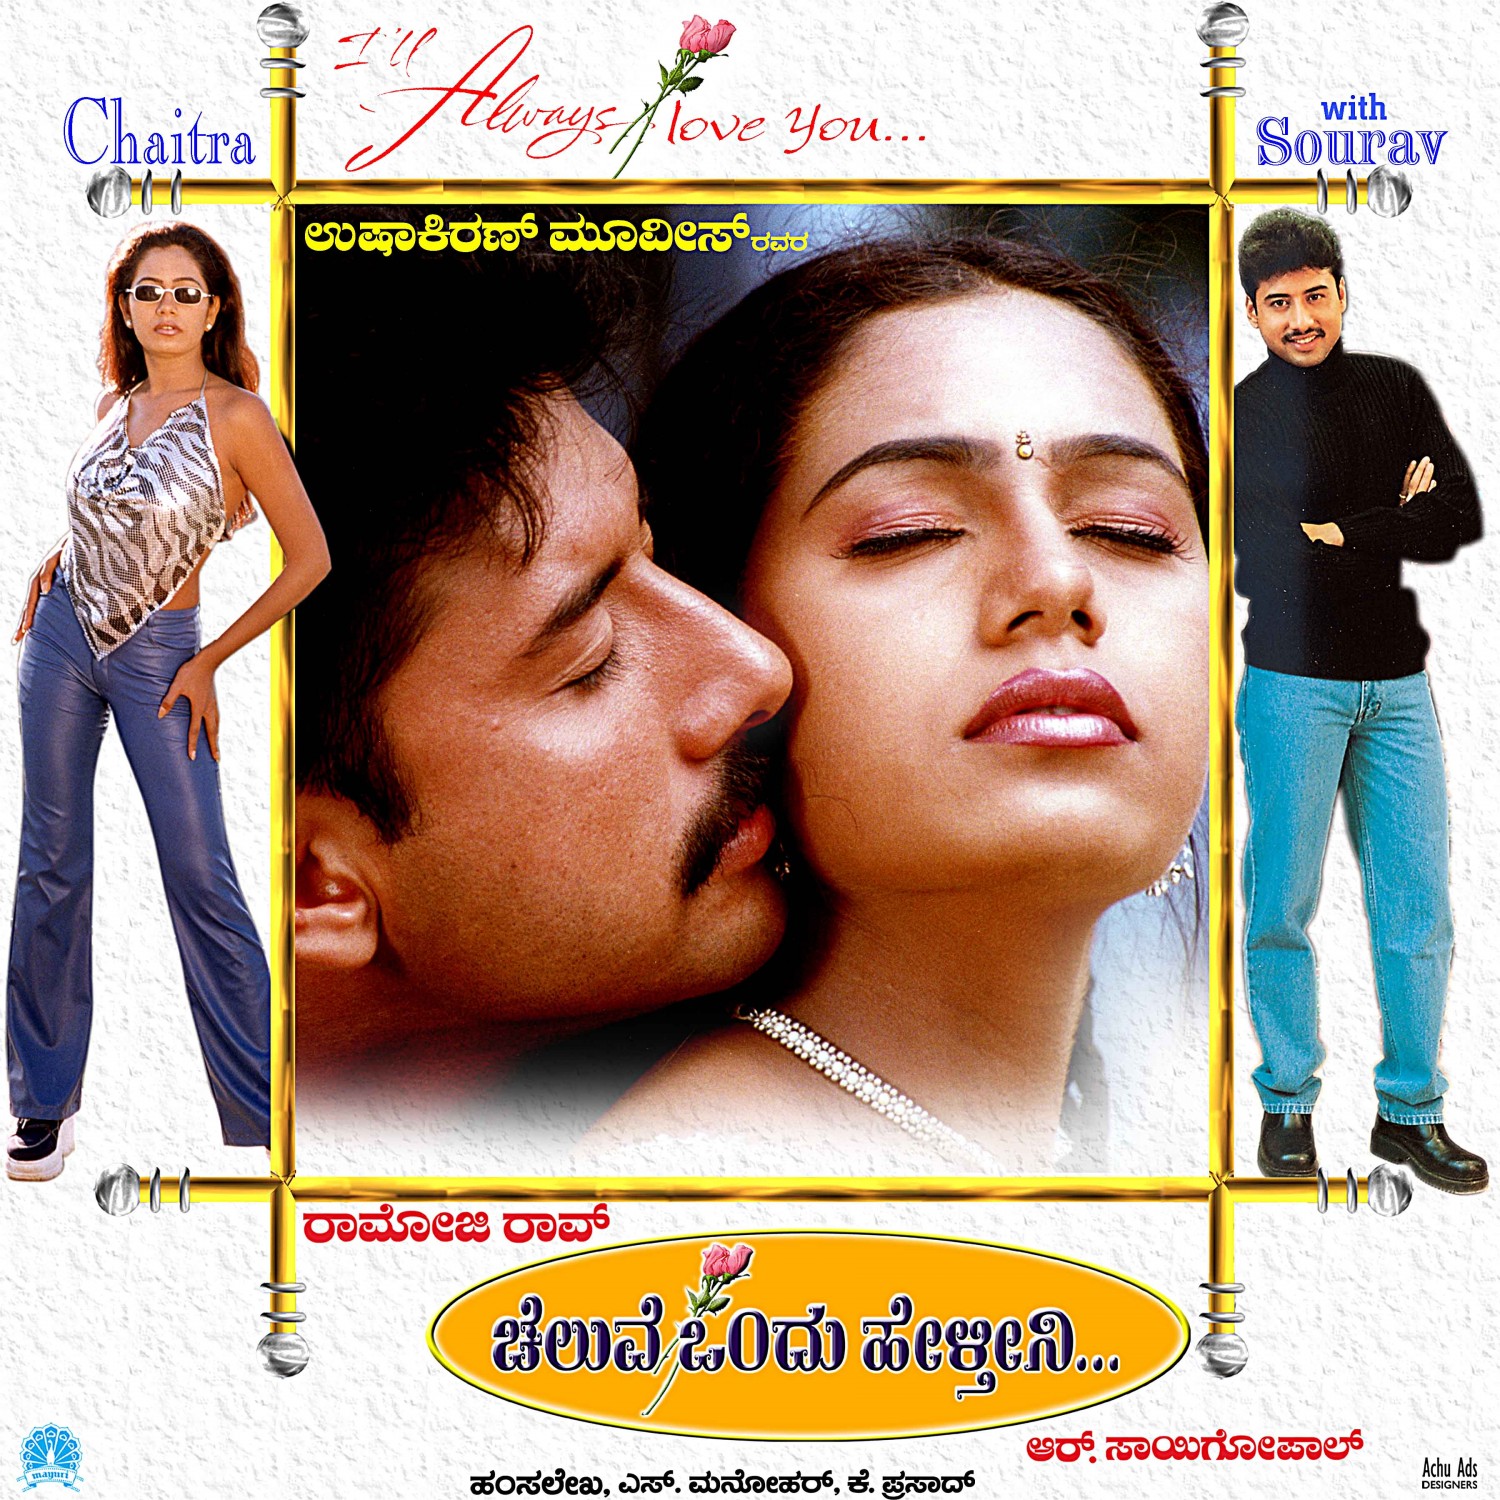 Extra Large Movie Poster Image for Cheluve Ondu Helthini (#5 of 5)